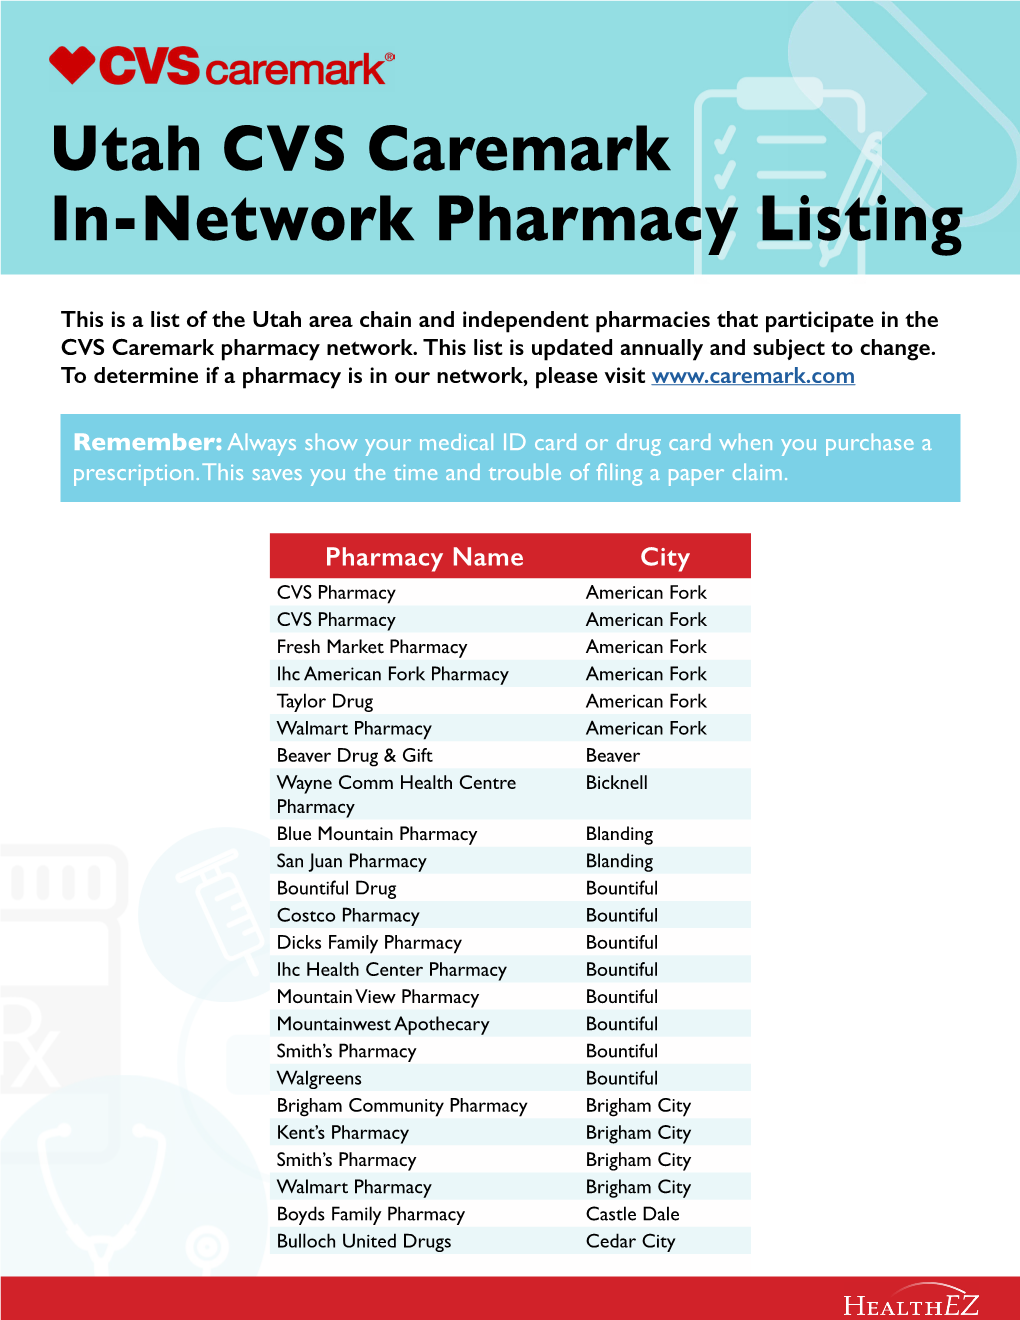 Utah CVS Caremark In-Network Pharmacy Listing